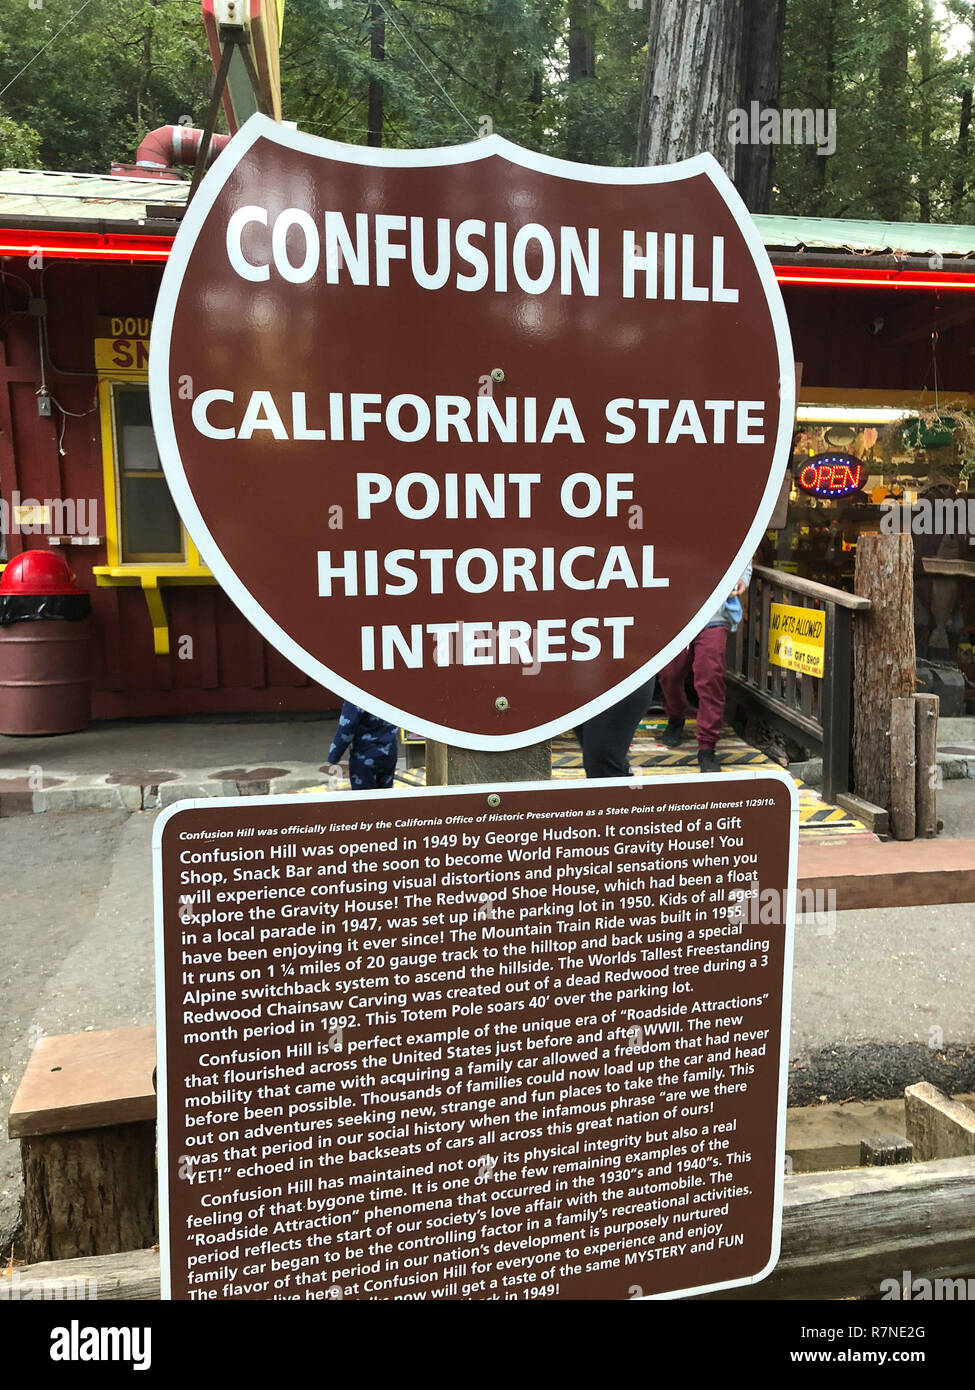 Eureka, CA - le 19 novembre 2018 : Confusion Hill oddity parc dans les séquoias de Californie Parcs nationaux et d'État dans le nord-est de la Californie. Banque D'Images